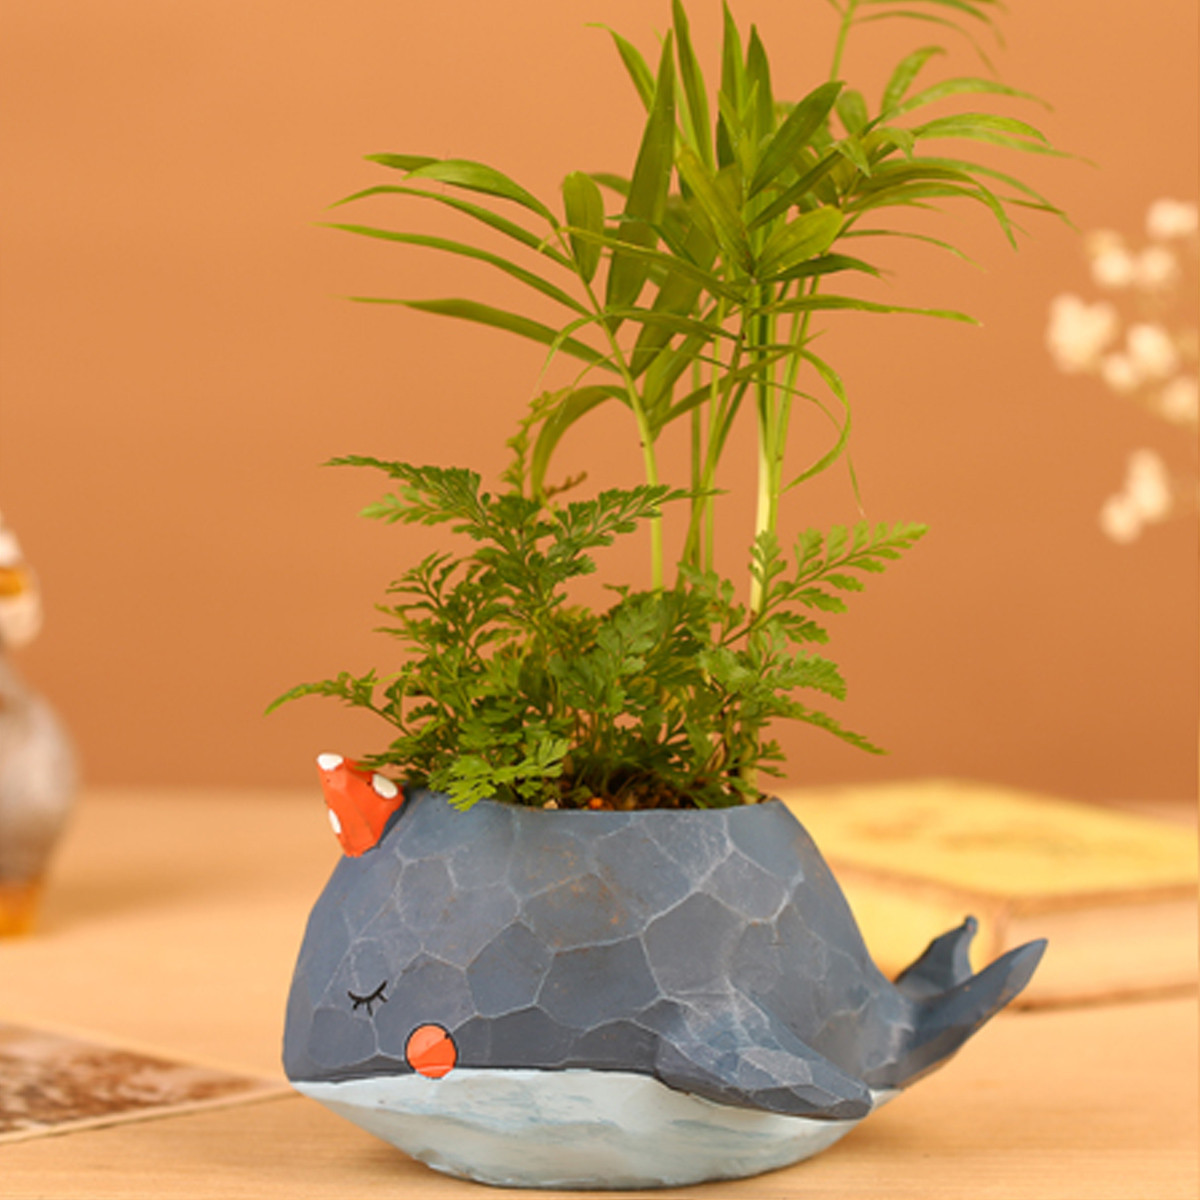 Whale-Planter-Resin-Potted-Plants-Succulent-Cactus-Flower-Pot-Craft-Ornaments-1473194-6